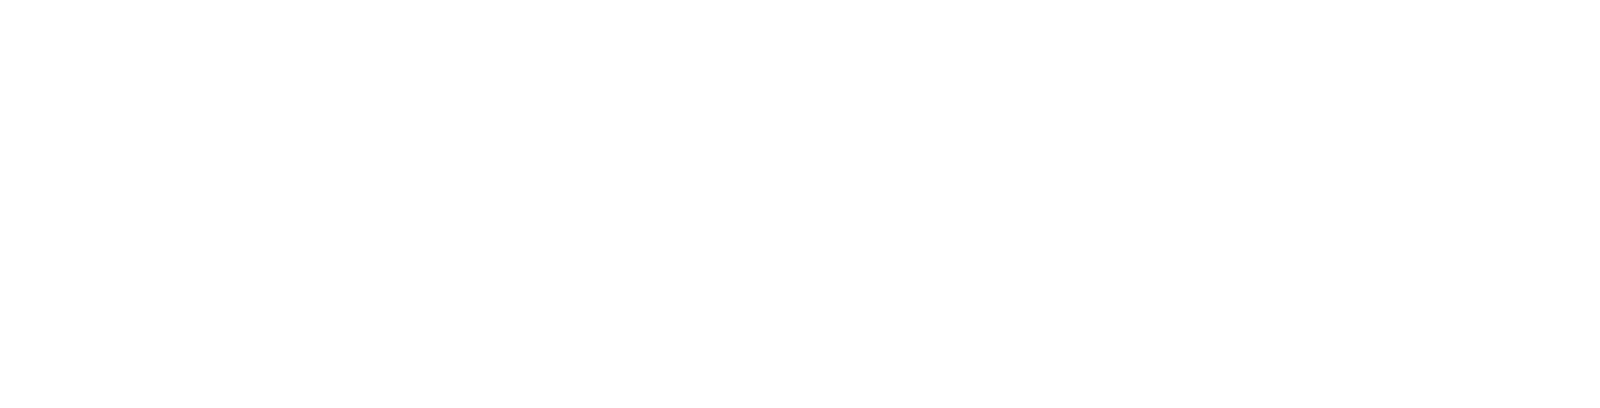 Crunchi-Logo-Black-R.png__PID:279acfb7-88f2-4f46-8149-d7288a3d690d